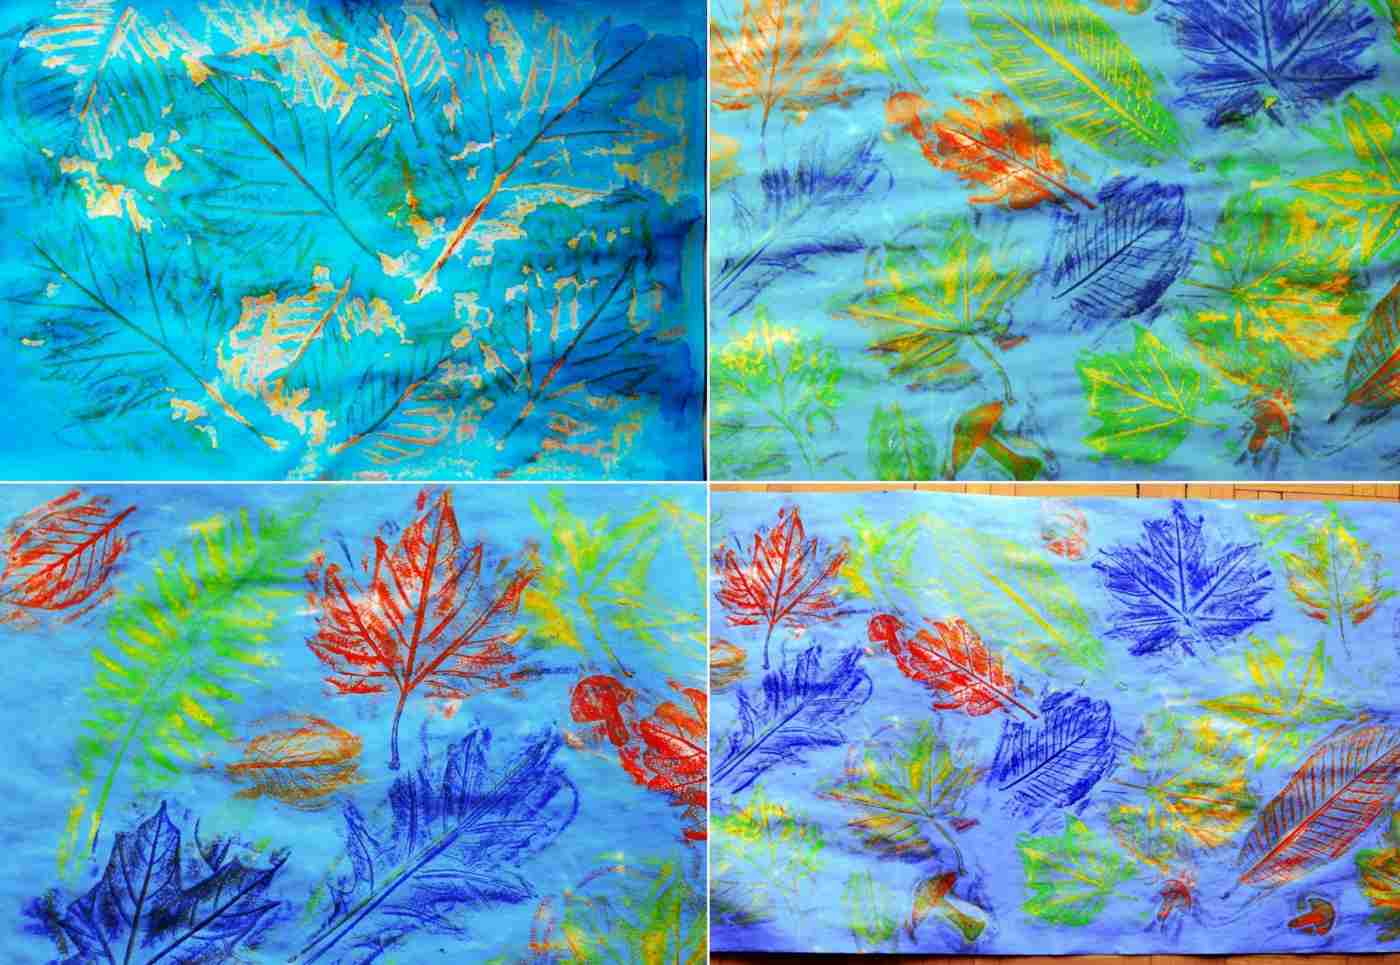 Create colorful, autumnal paintings in elementary school or kindergarten